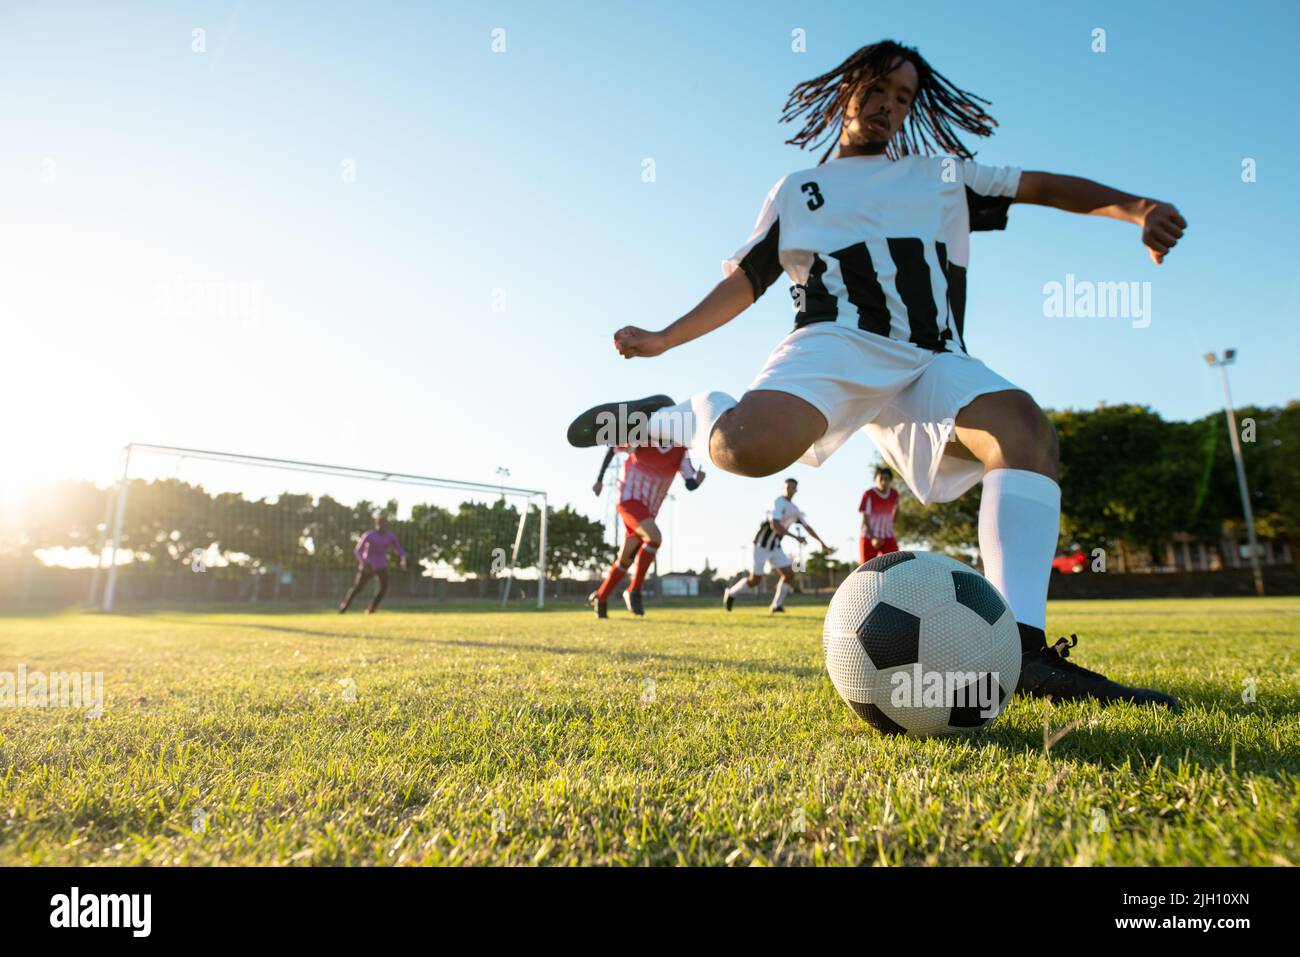 Vue en contre-plongée du joueur multiracial qui joue au ballon lors d'un match de football contre un ciel dégagé Banque D'Images